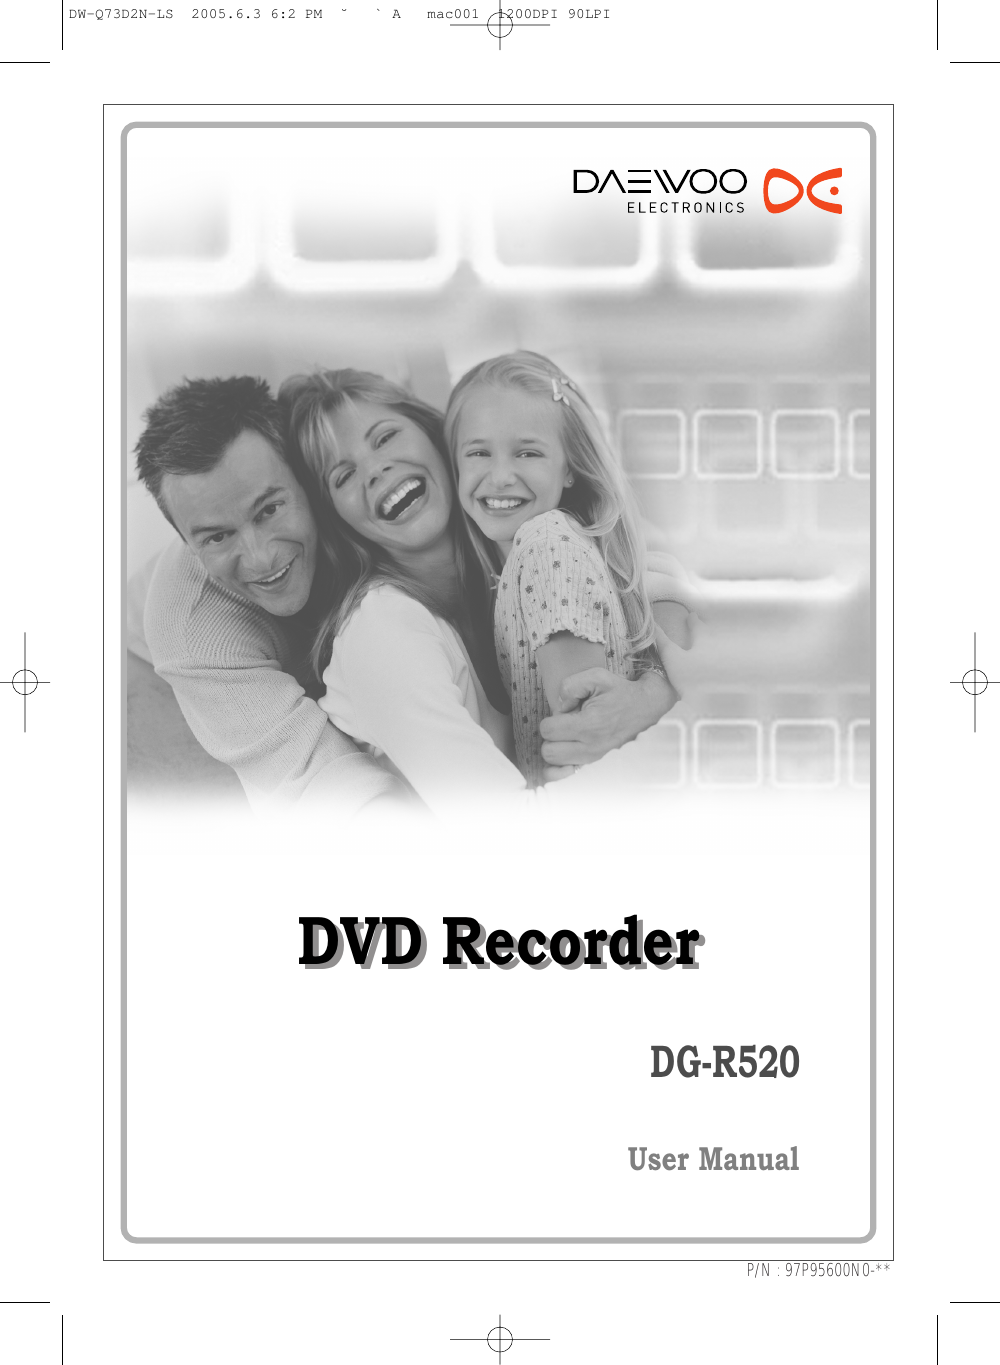 DVD RecorderDVD RecorderDG-R520User ManualP/N : 97P95600N0-**DW-Q73D2N-LS  2005.6.3 6:2 PM  ˘ ` A   mac001  1200DPI 90LPI